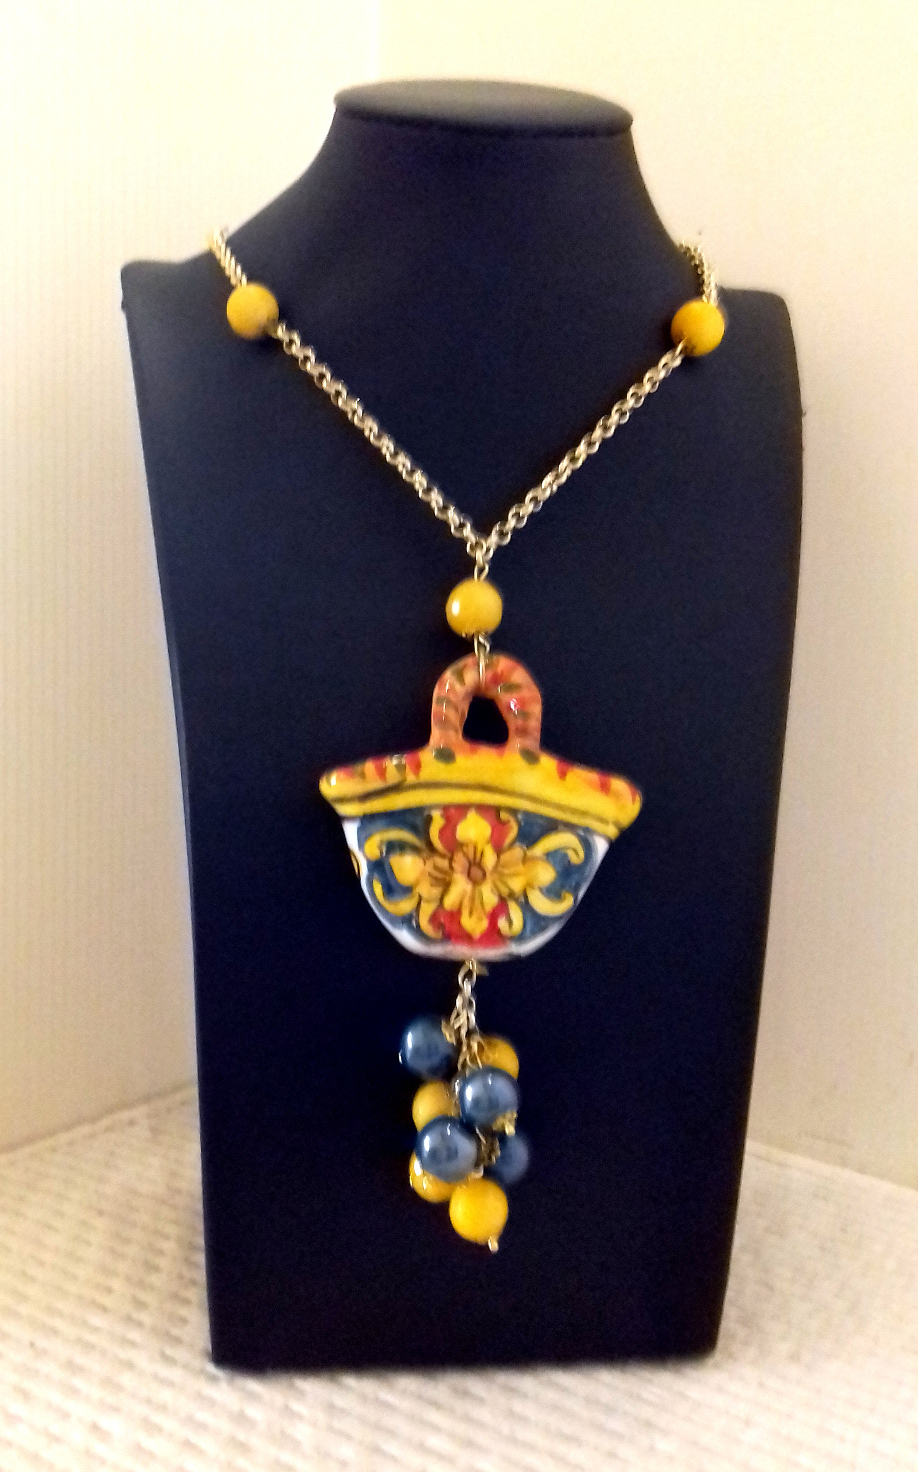 Collana con pendaglio a forma di coffa e perle di color giallo-blu